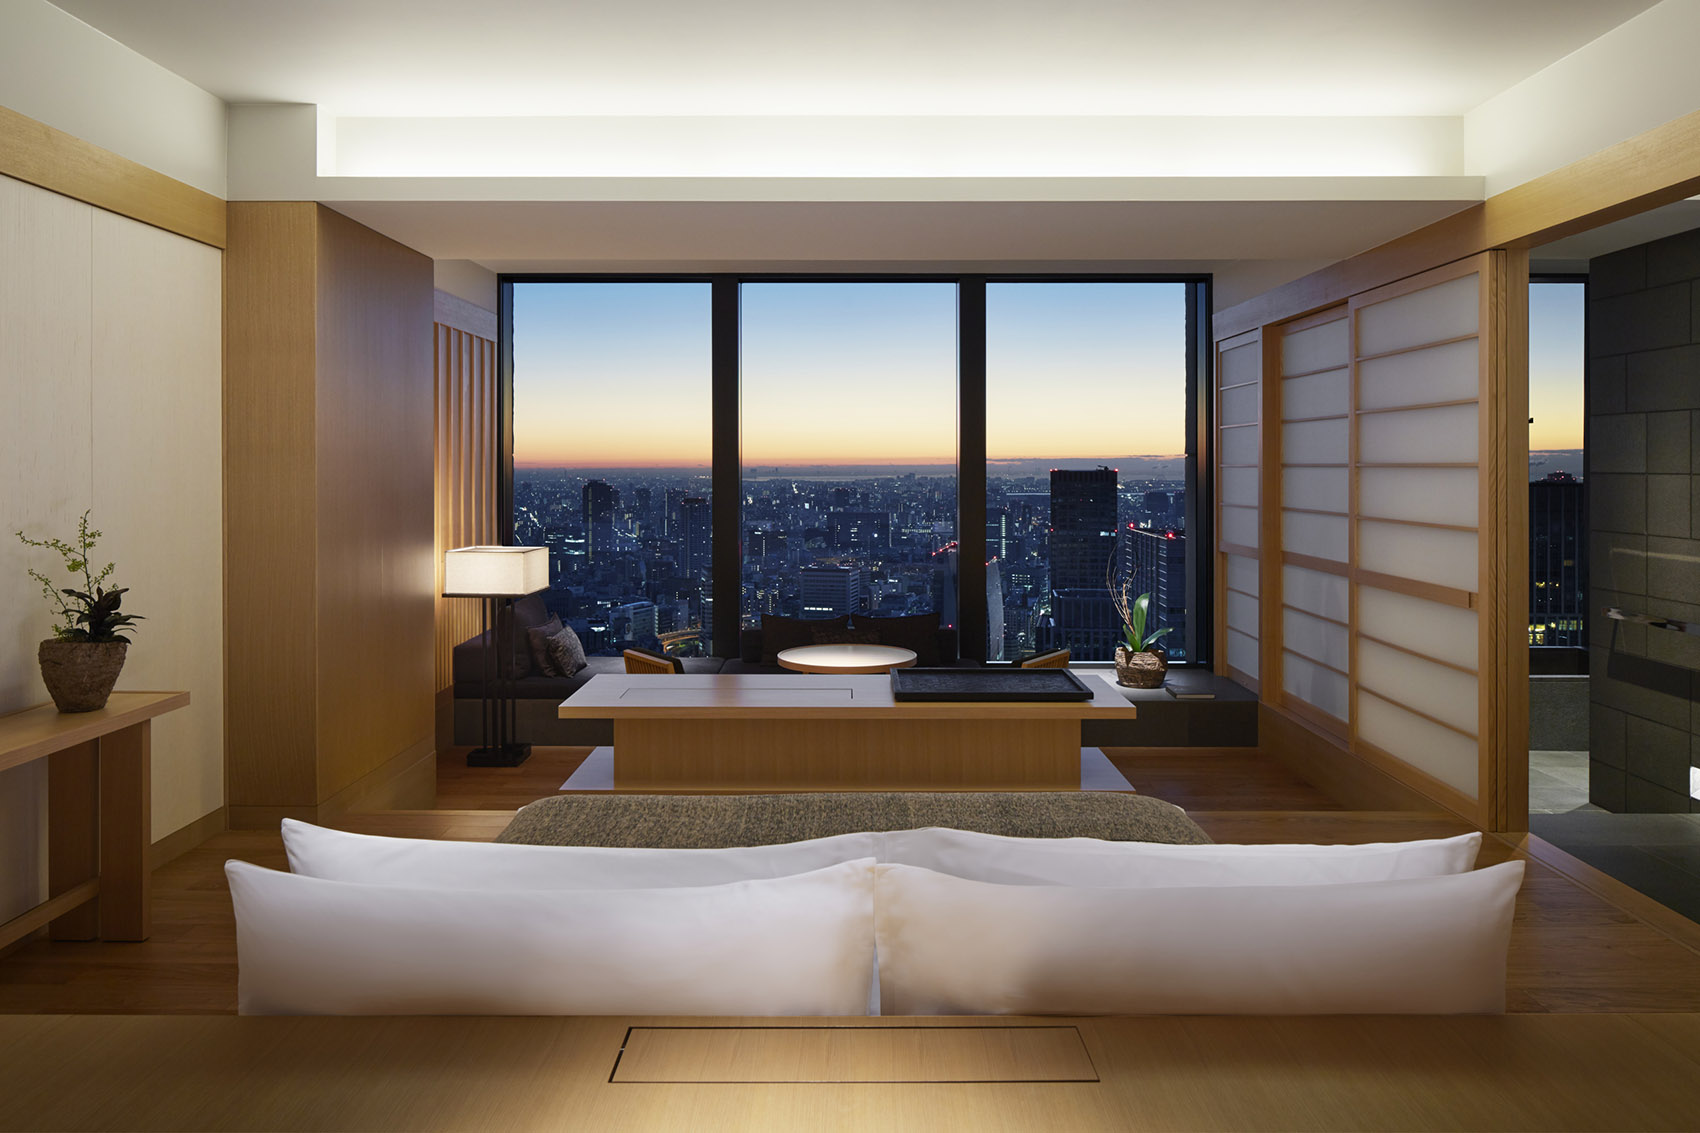 日本东京·“安缦AMAN”精品度假酒店 / Kerry Hill